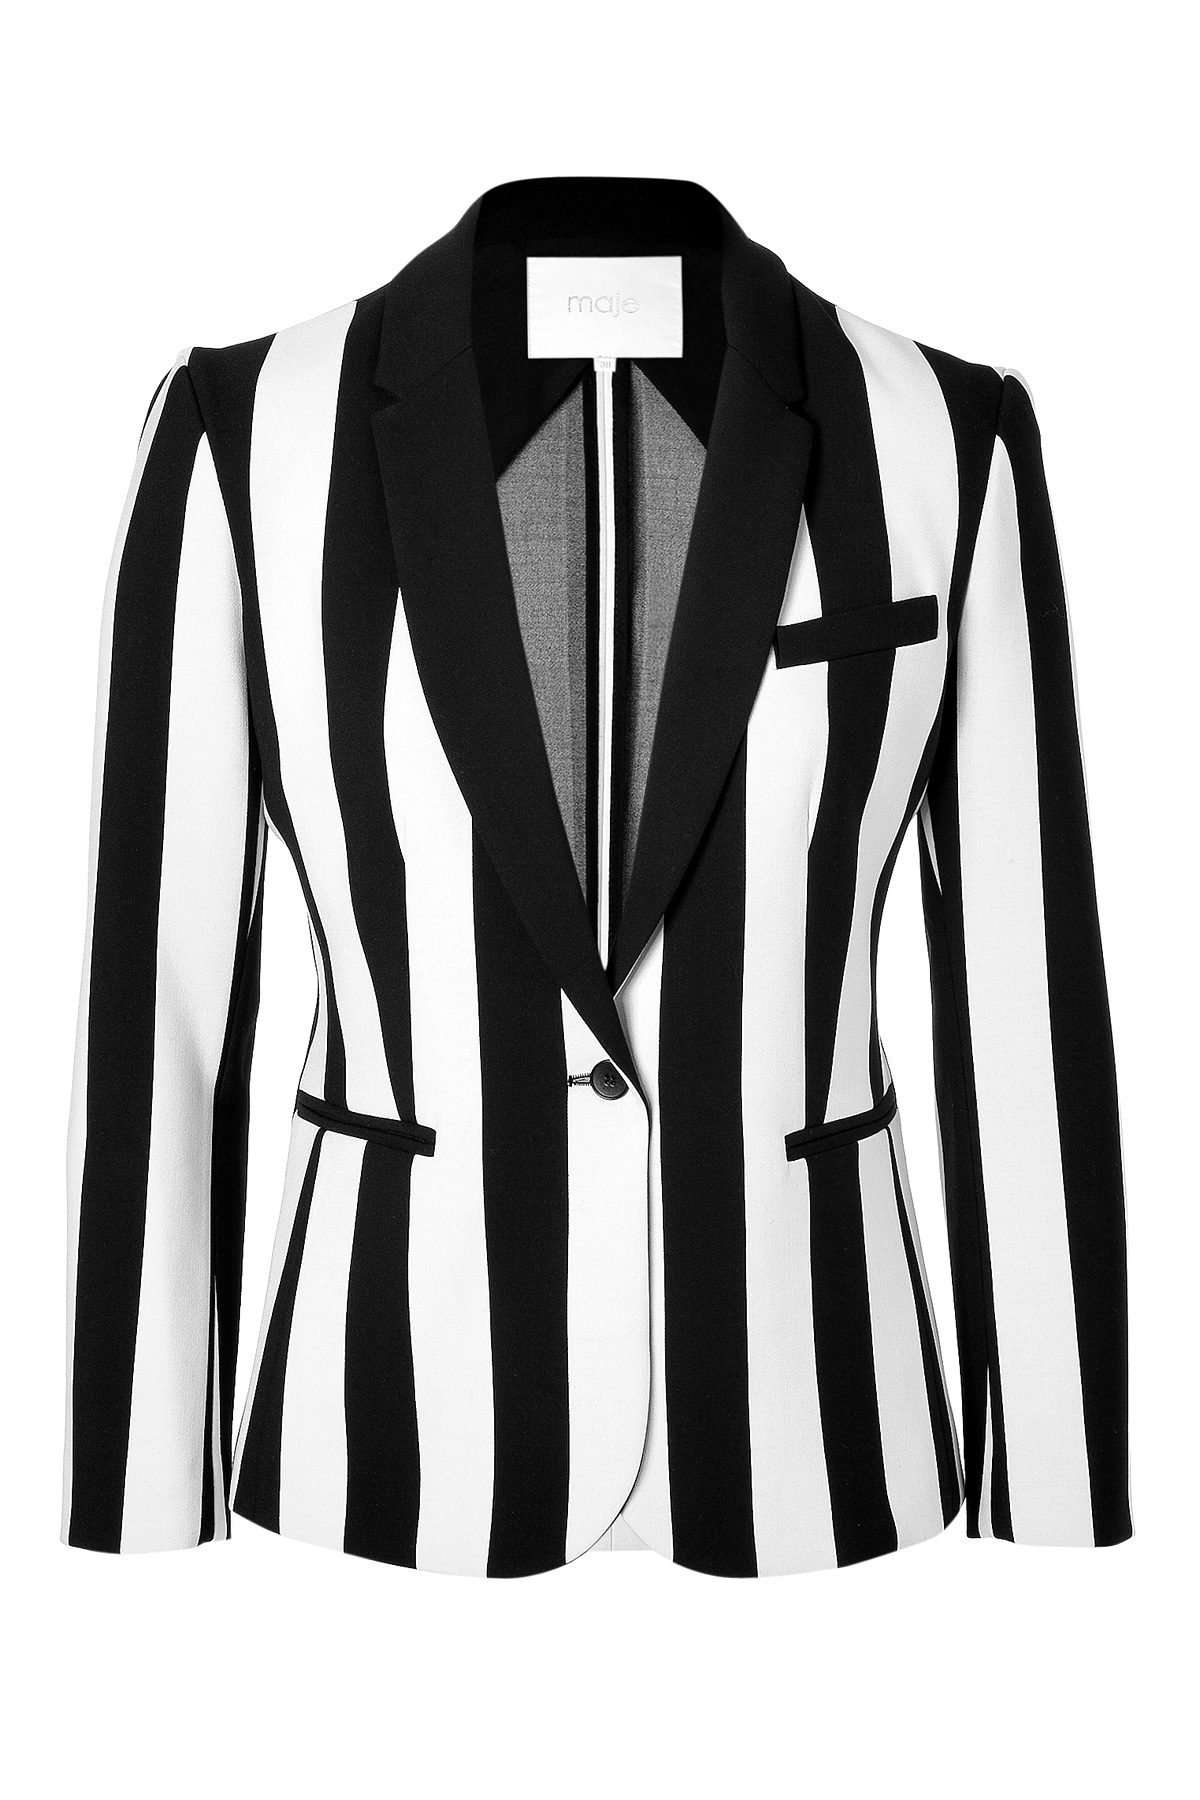 Lyst - Maje Striped Blazer in Blackwhite in White